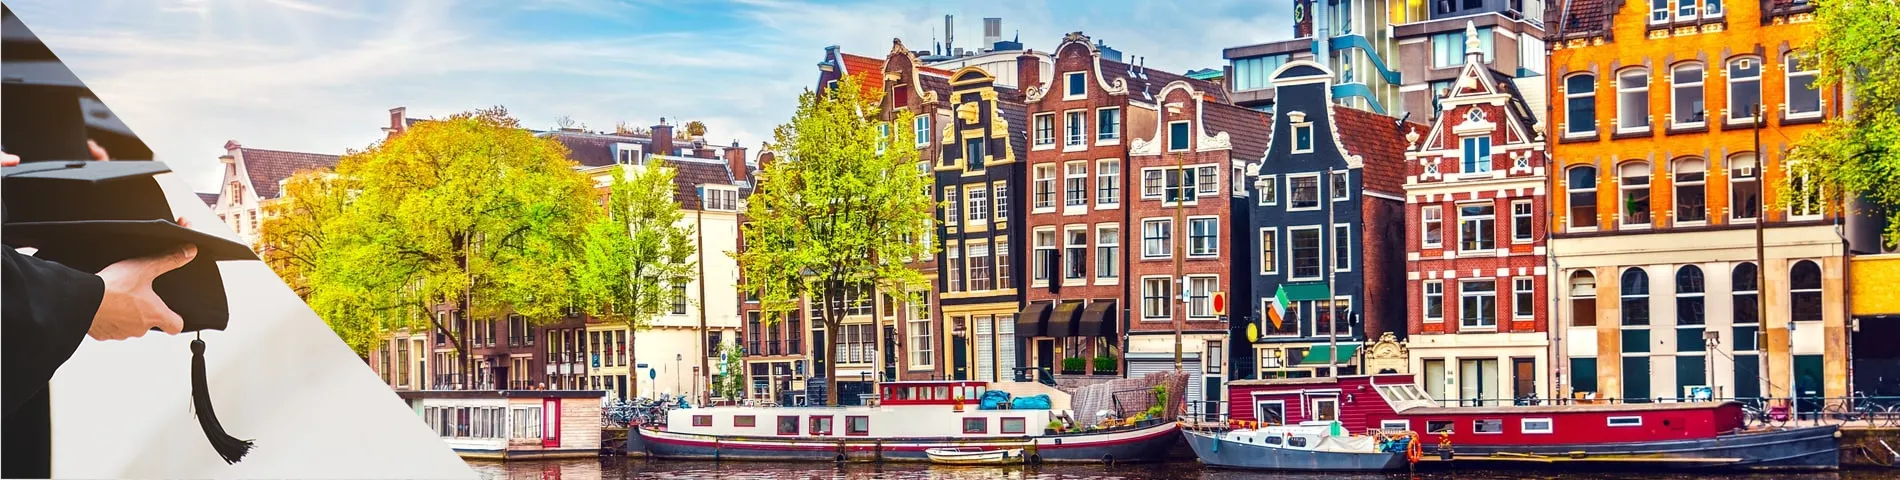 อัมสเตอร์ดัม - หลักสูตรมหาวิทยาลัย